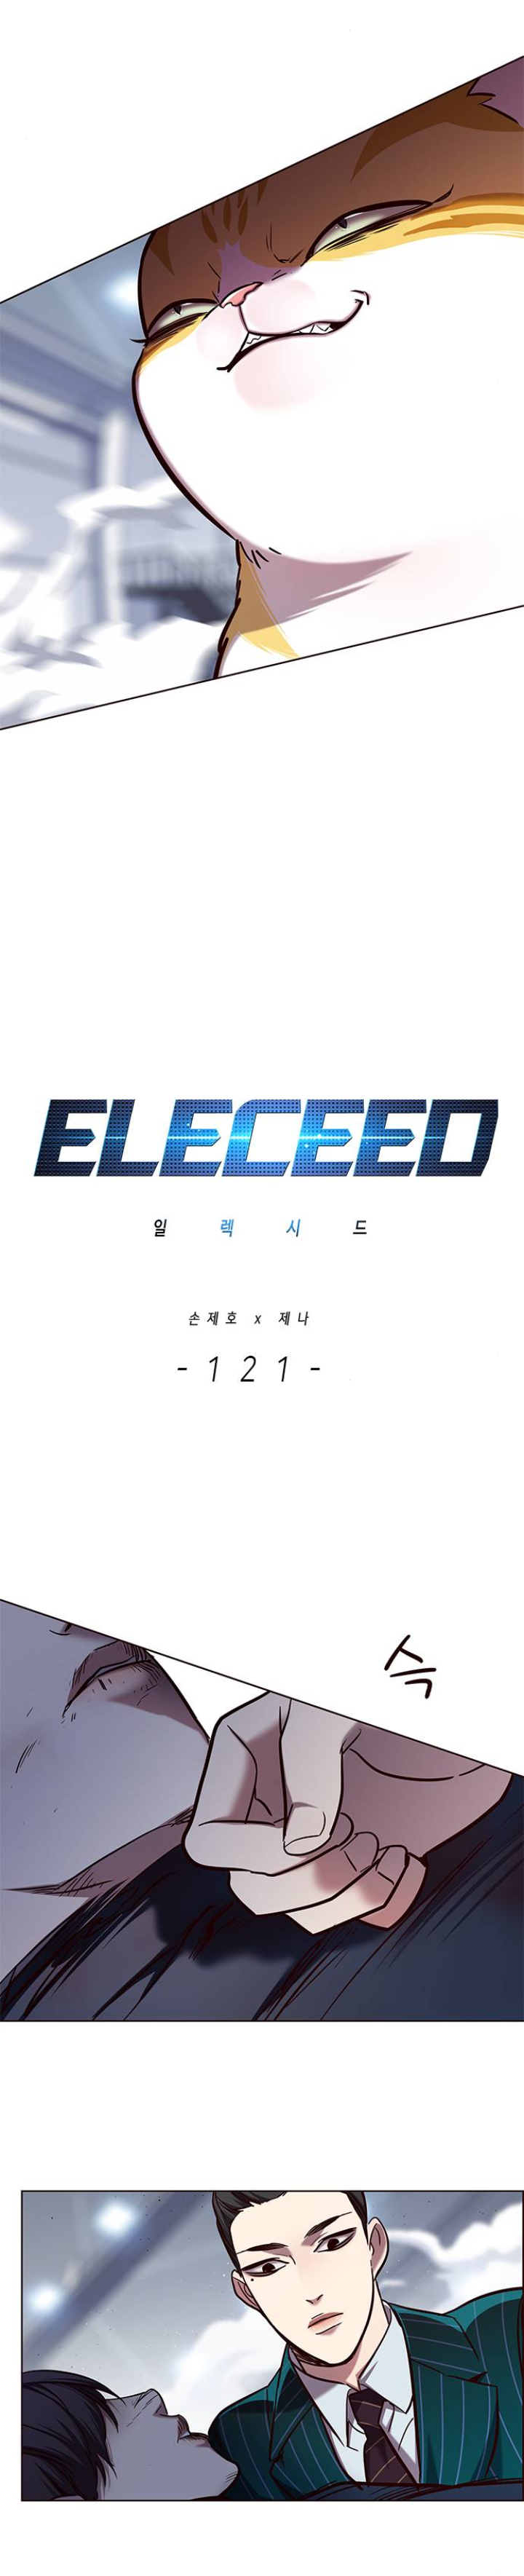 Eleceed 121 (4)